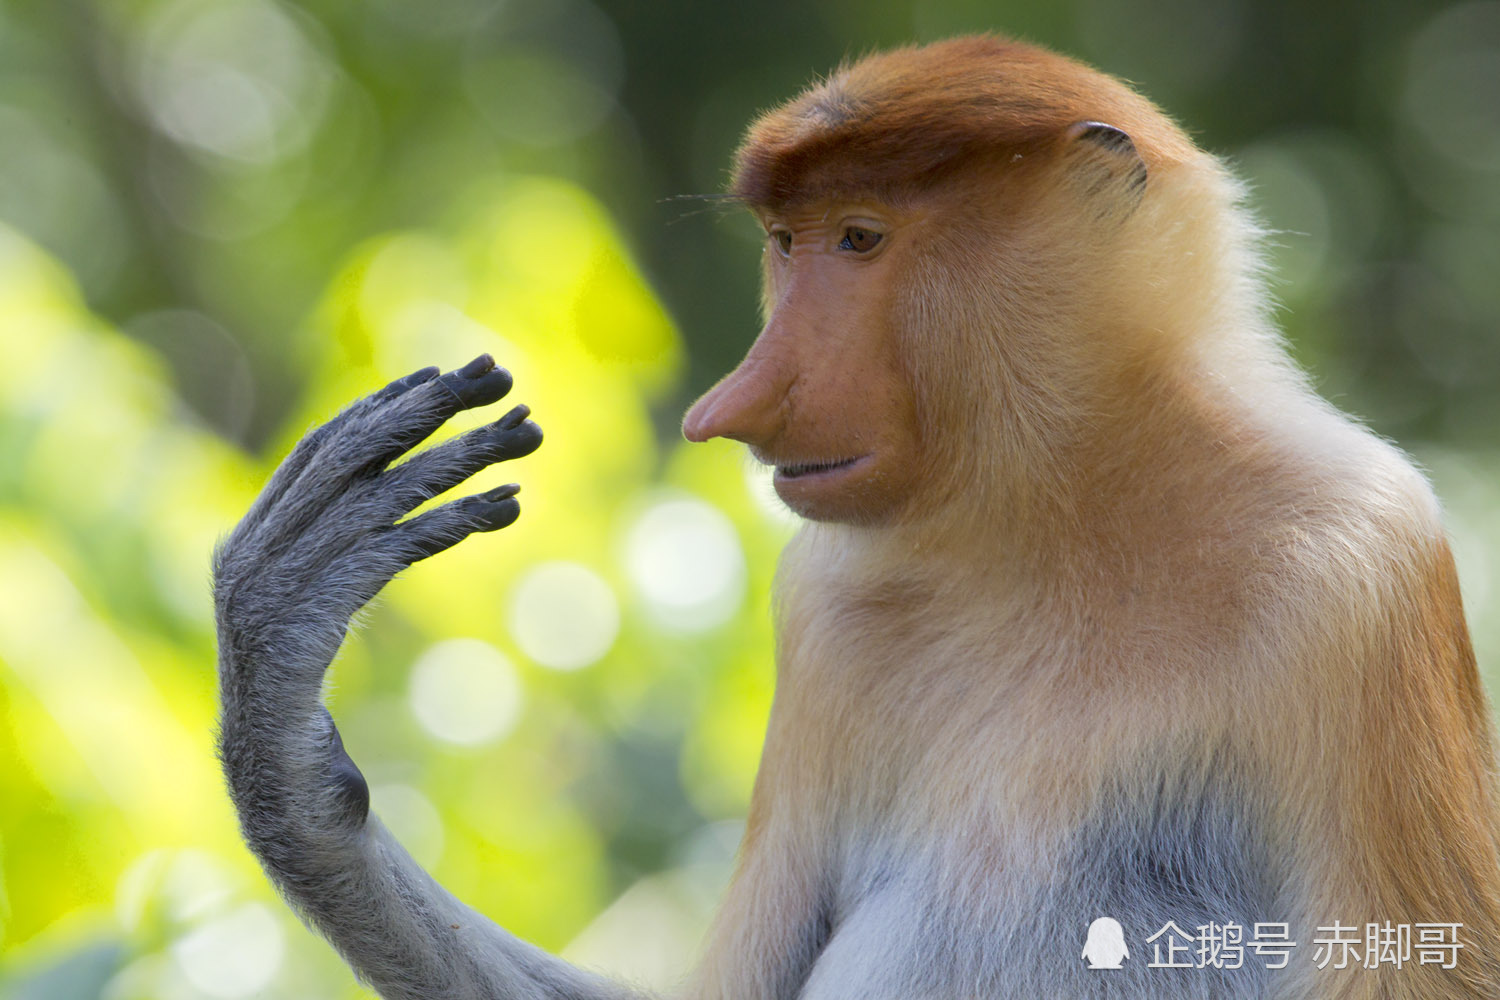 长鼻猴:在马来语中被称为bekantan,是东南亚婆罗洲岛特有的红褐色树栖